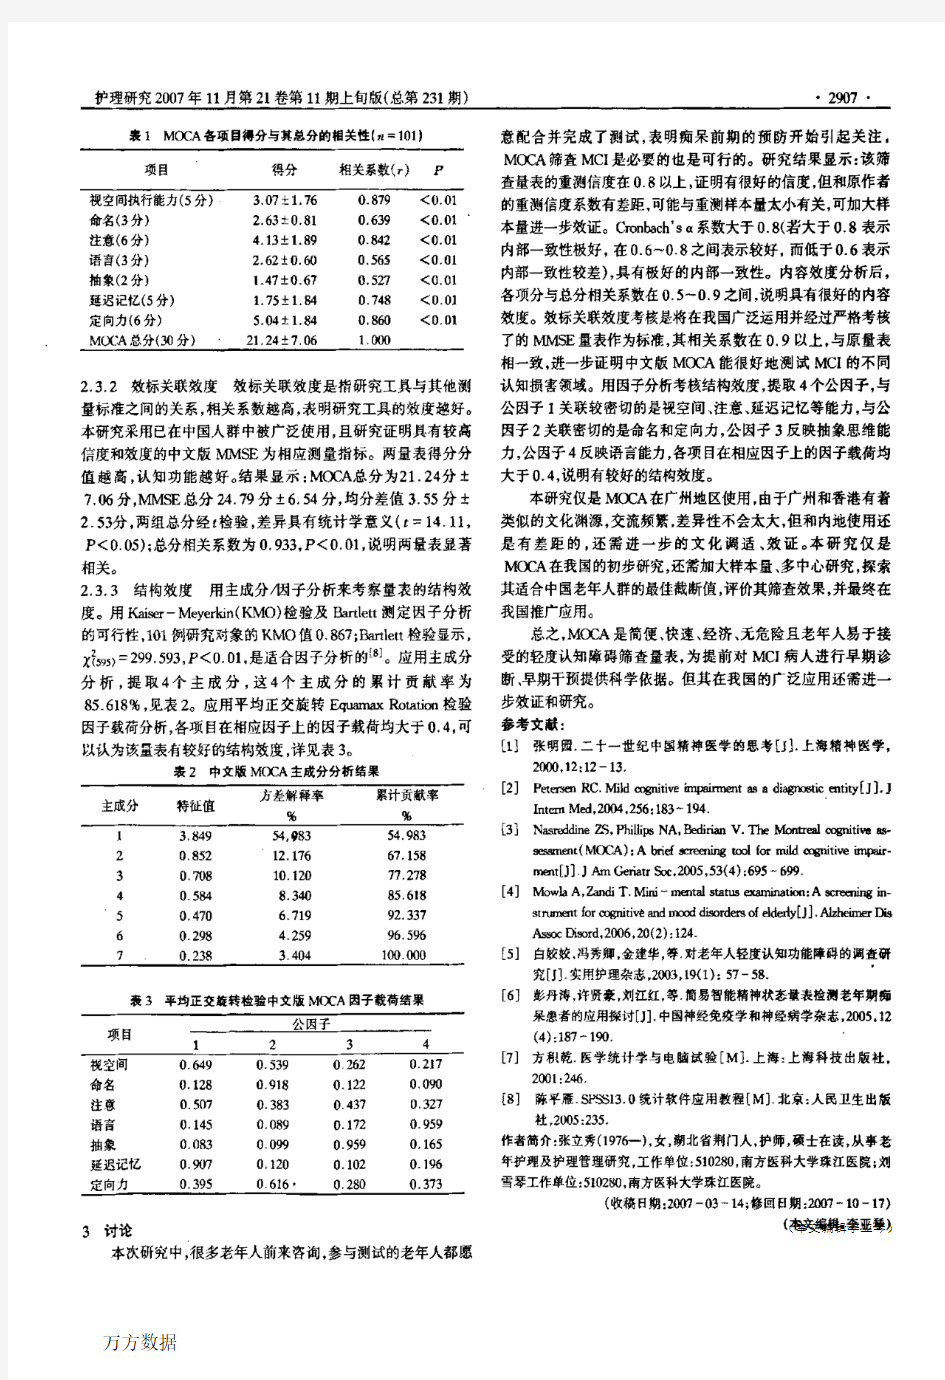 蒙特利尔认知评估量表中文版的信效度研究